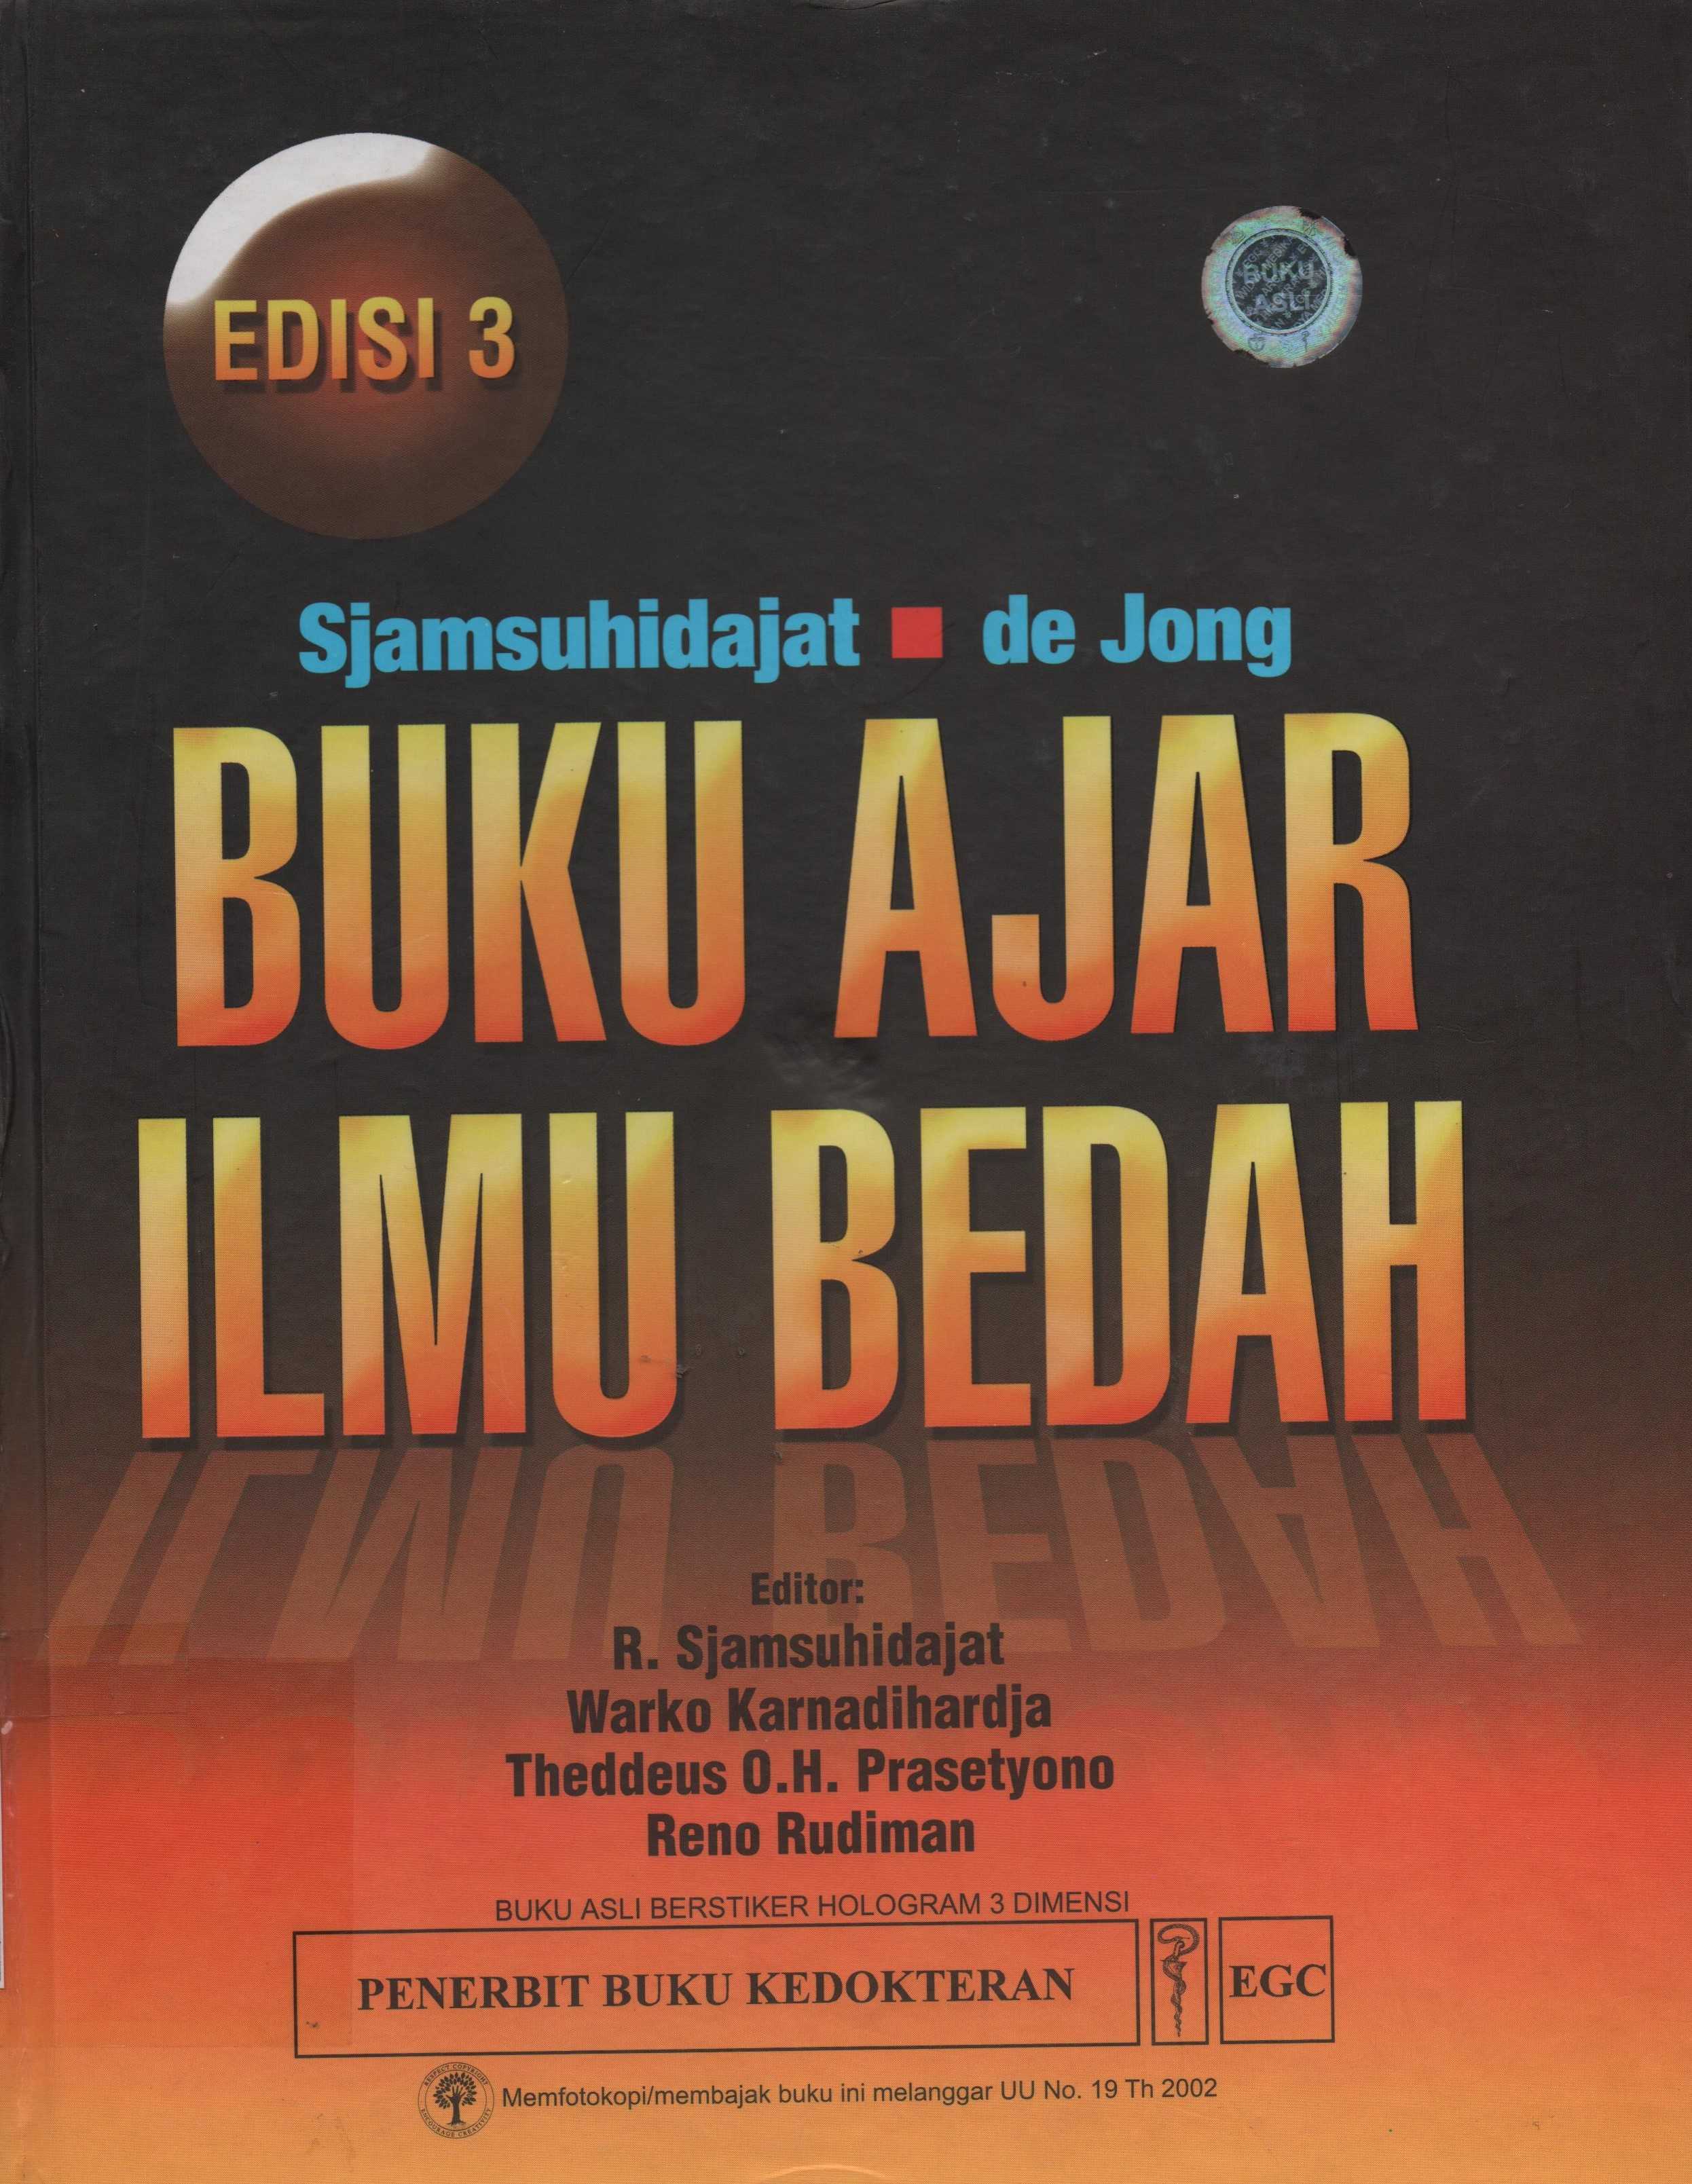 Image of Buku Ajar Ilmu Bedah Edisi 3